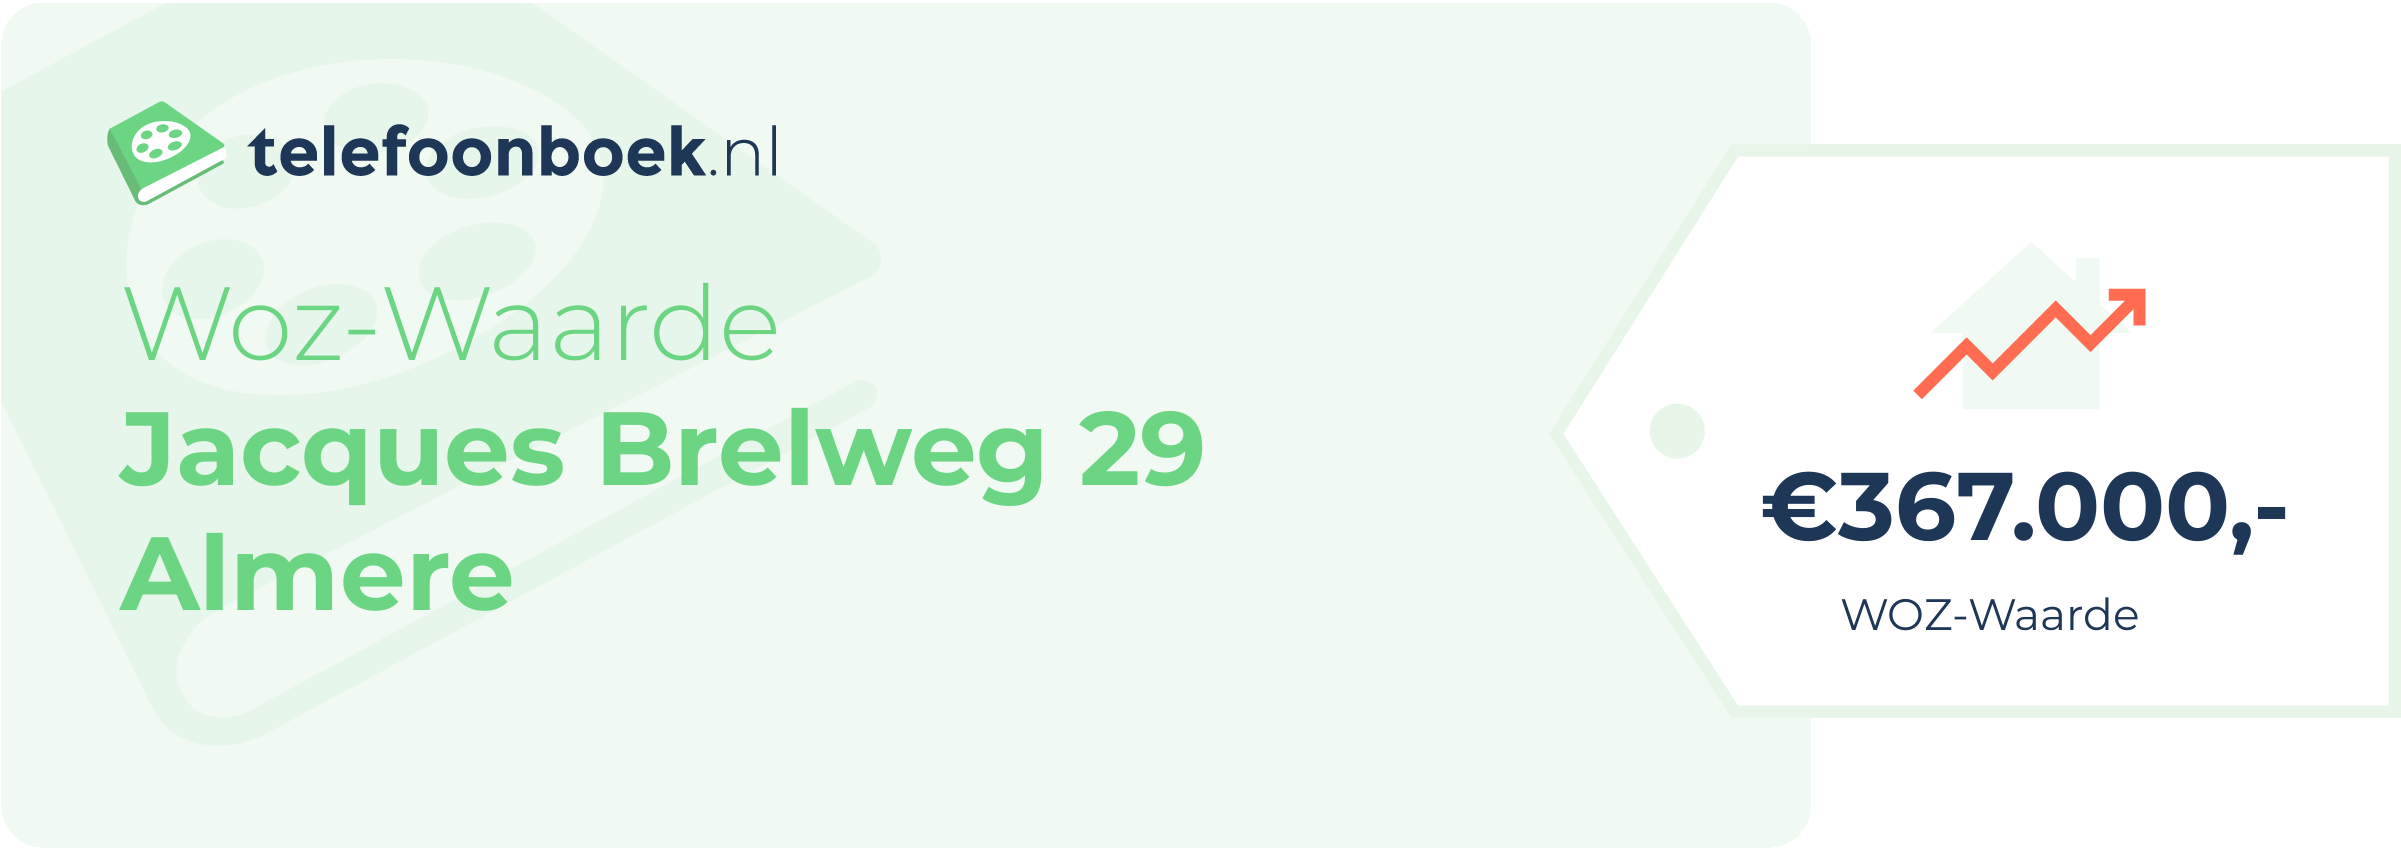 WOZ-waarde Jacques Brelweg 29 Almere